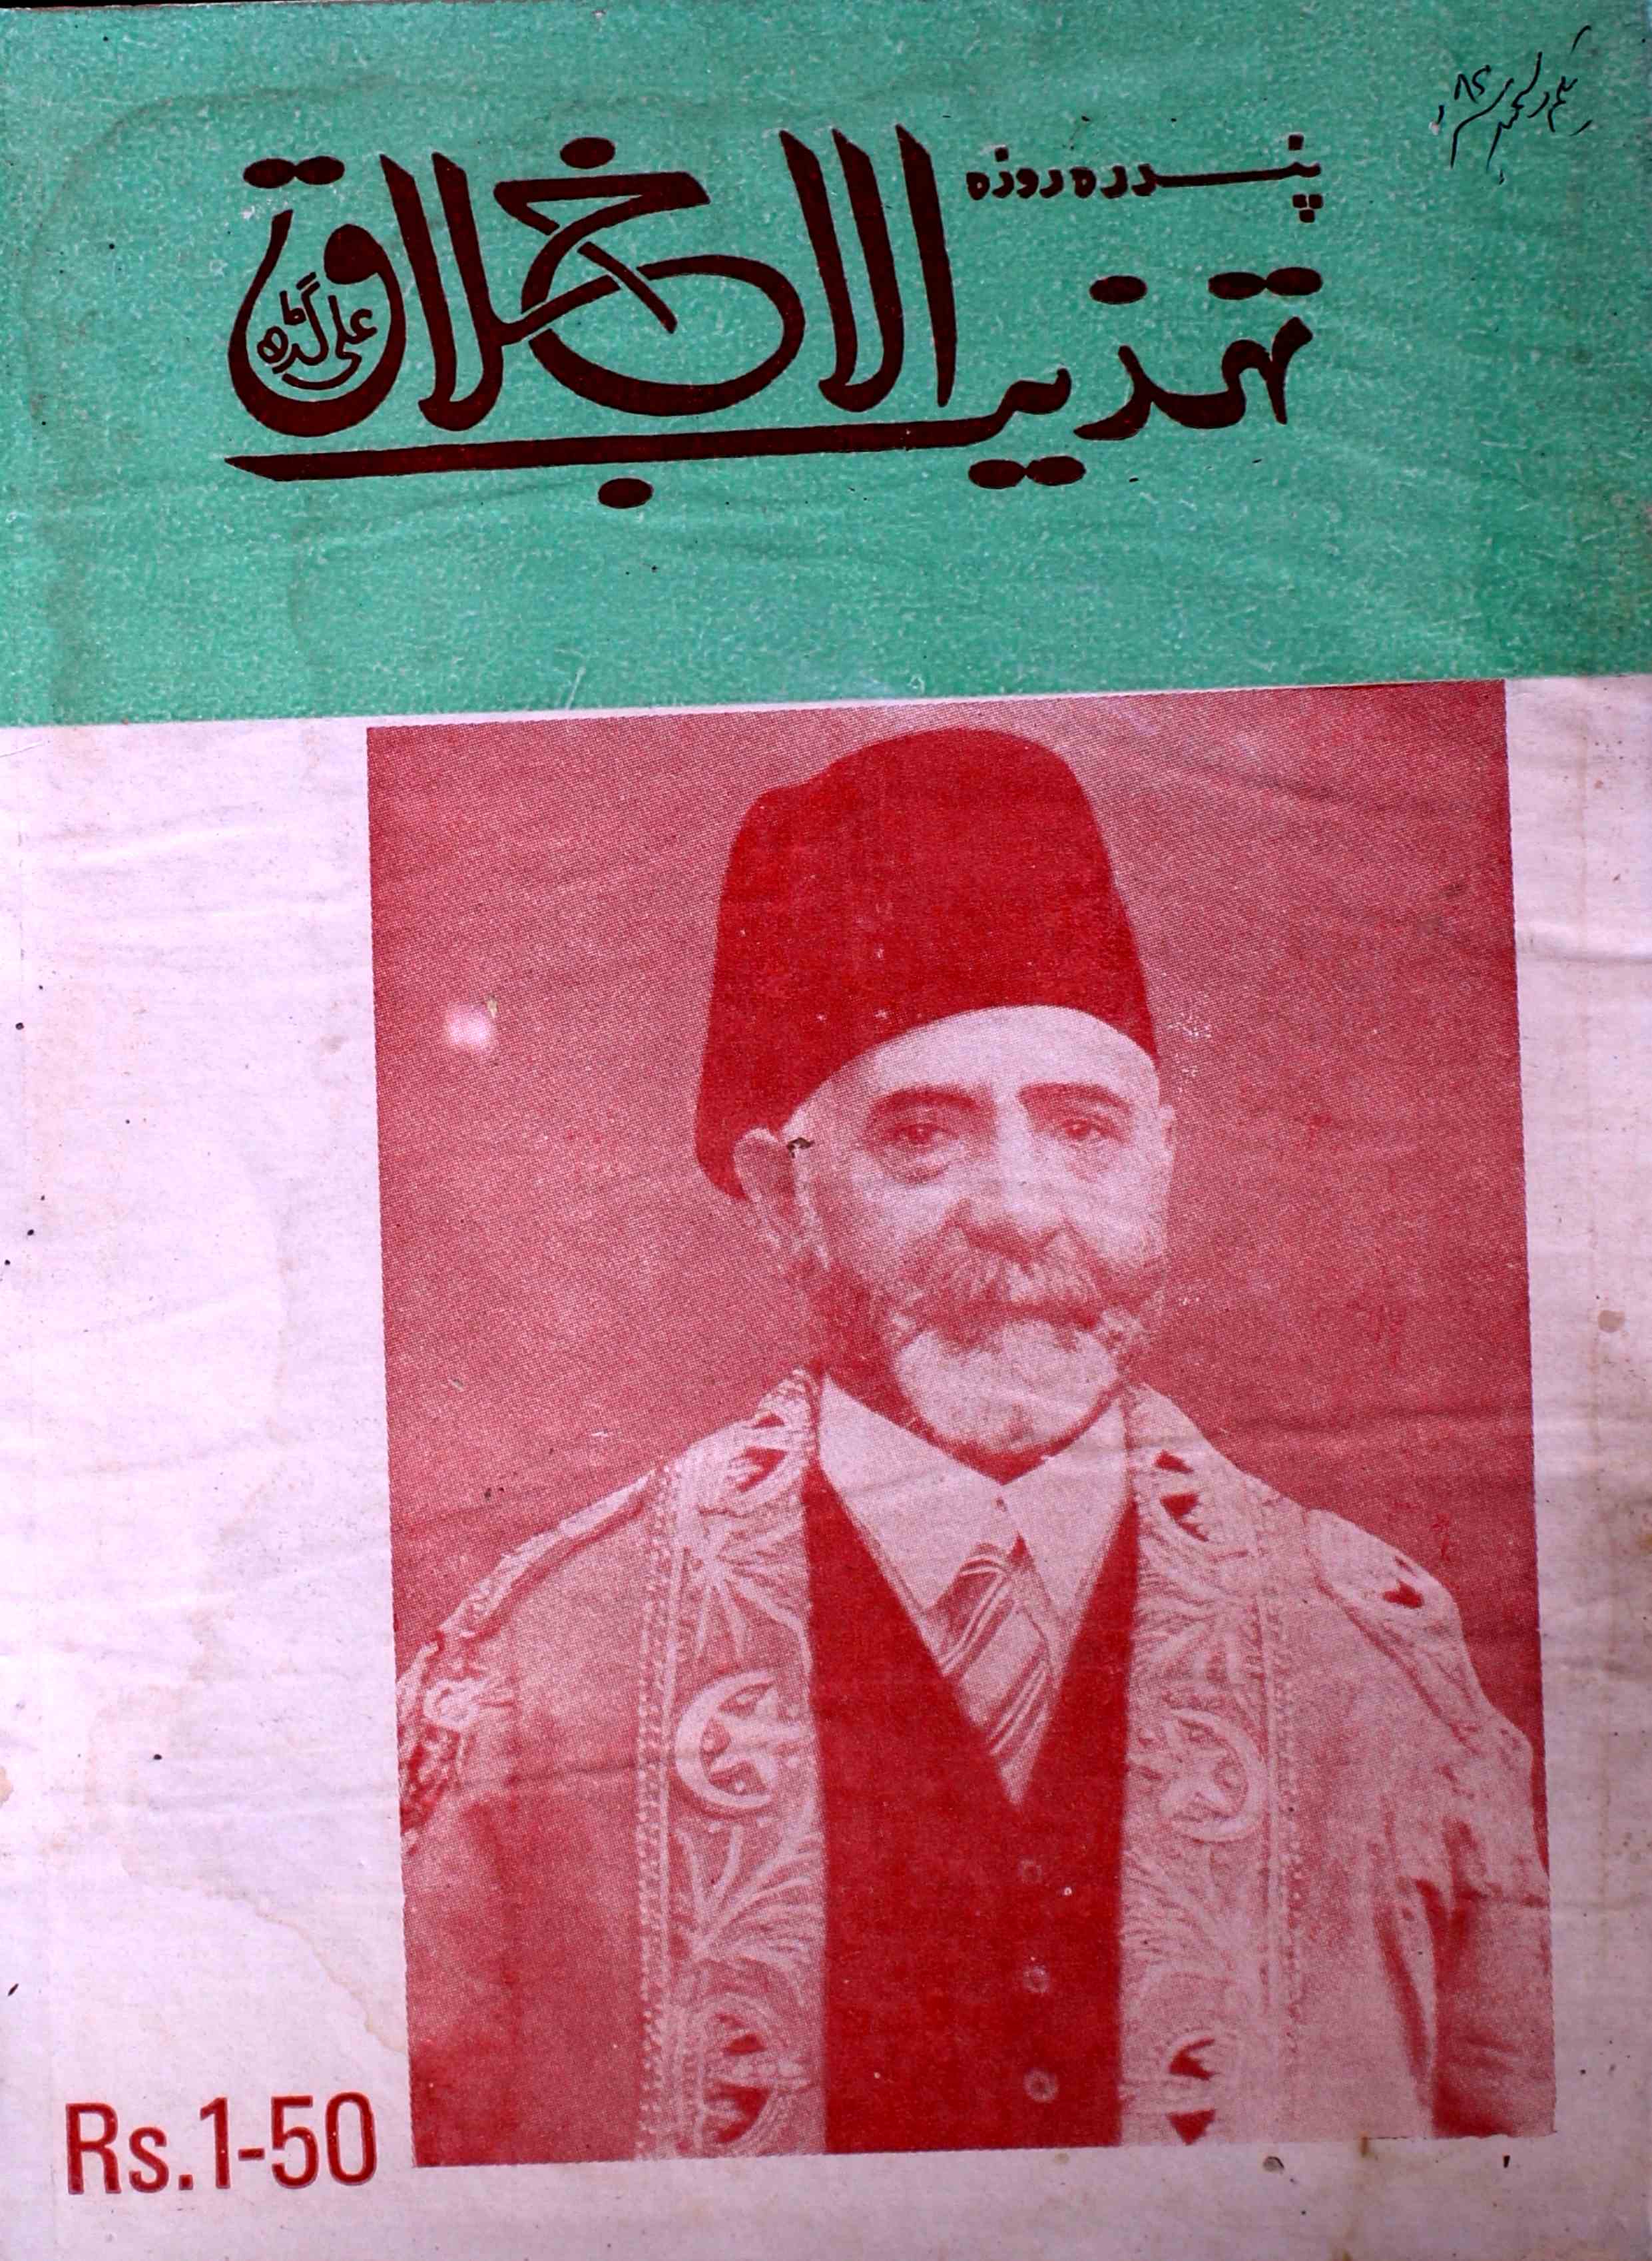 tahzibul-akhlaq-aligarh-shumaara-number-023-syed-hamid-magazines